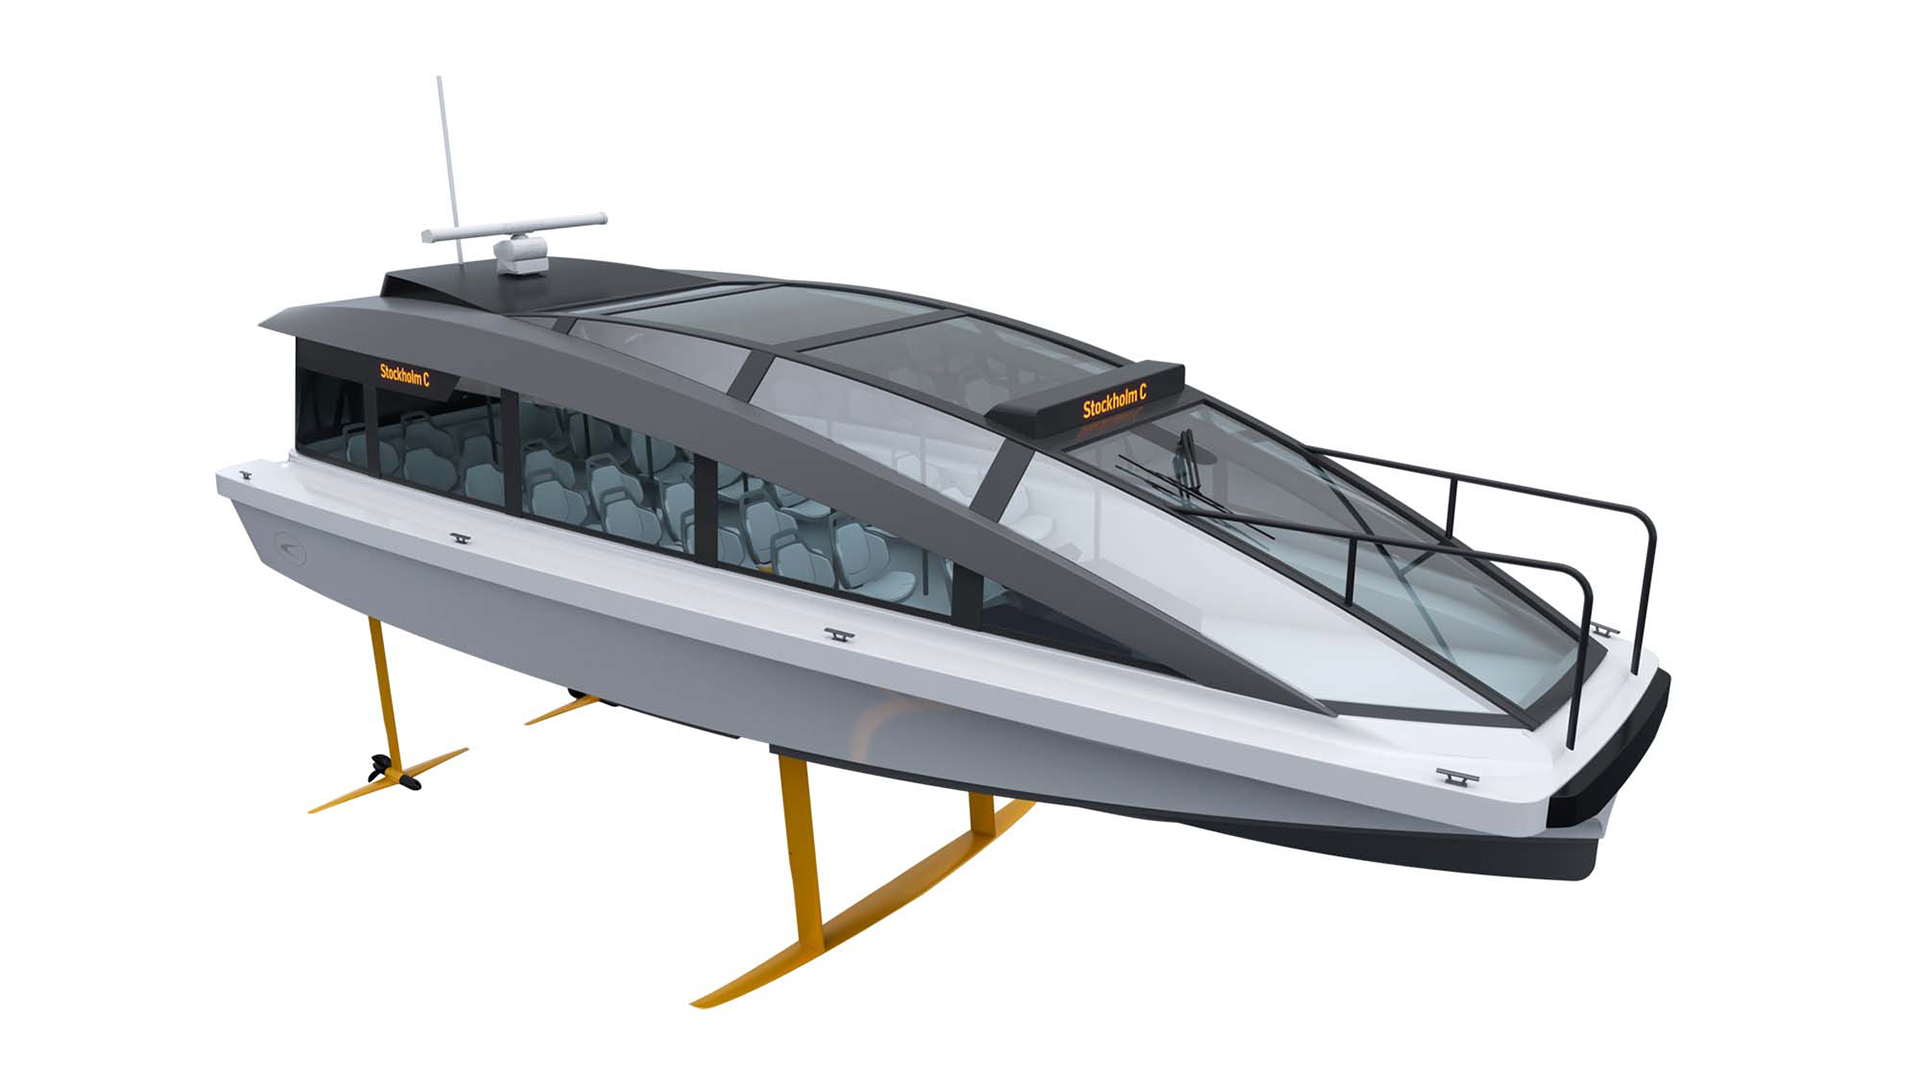 Este barco de pasajeros o taxi acuático se empezará a comercializar a finales de 2022